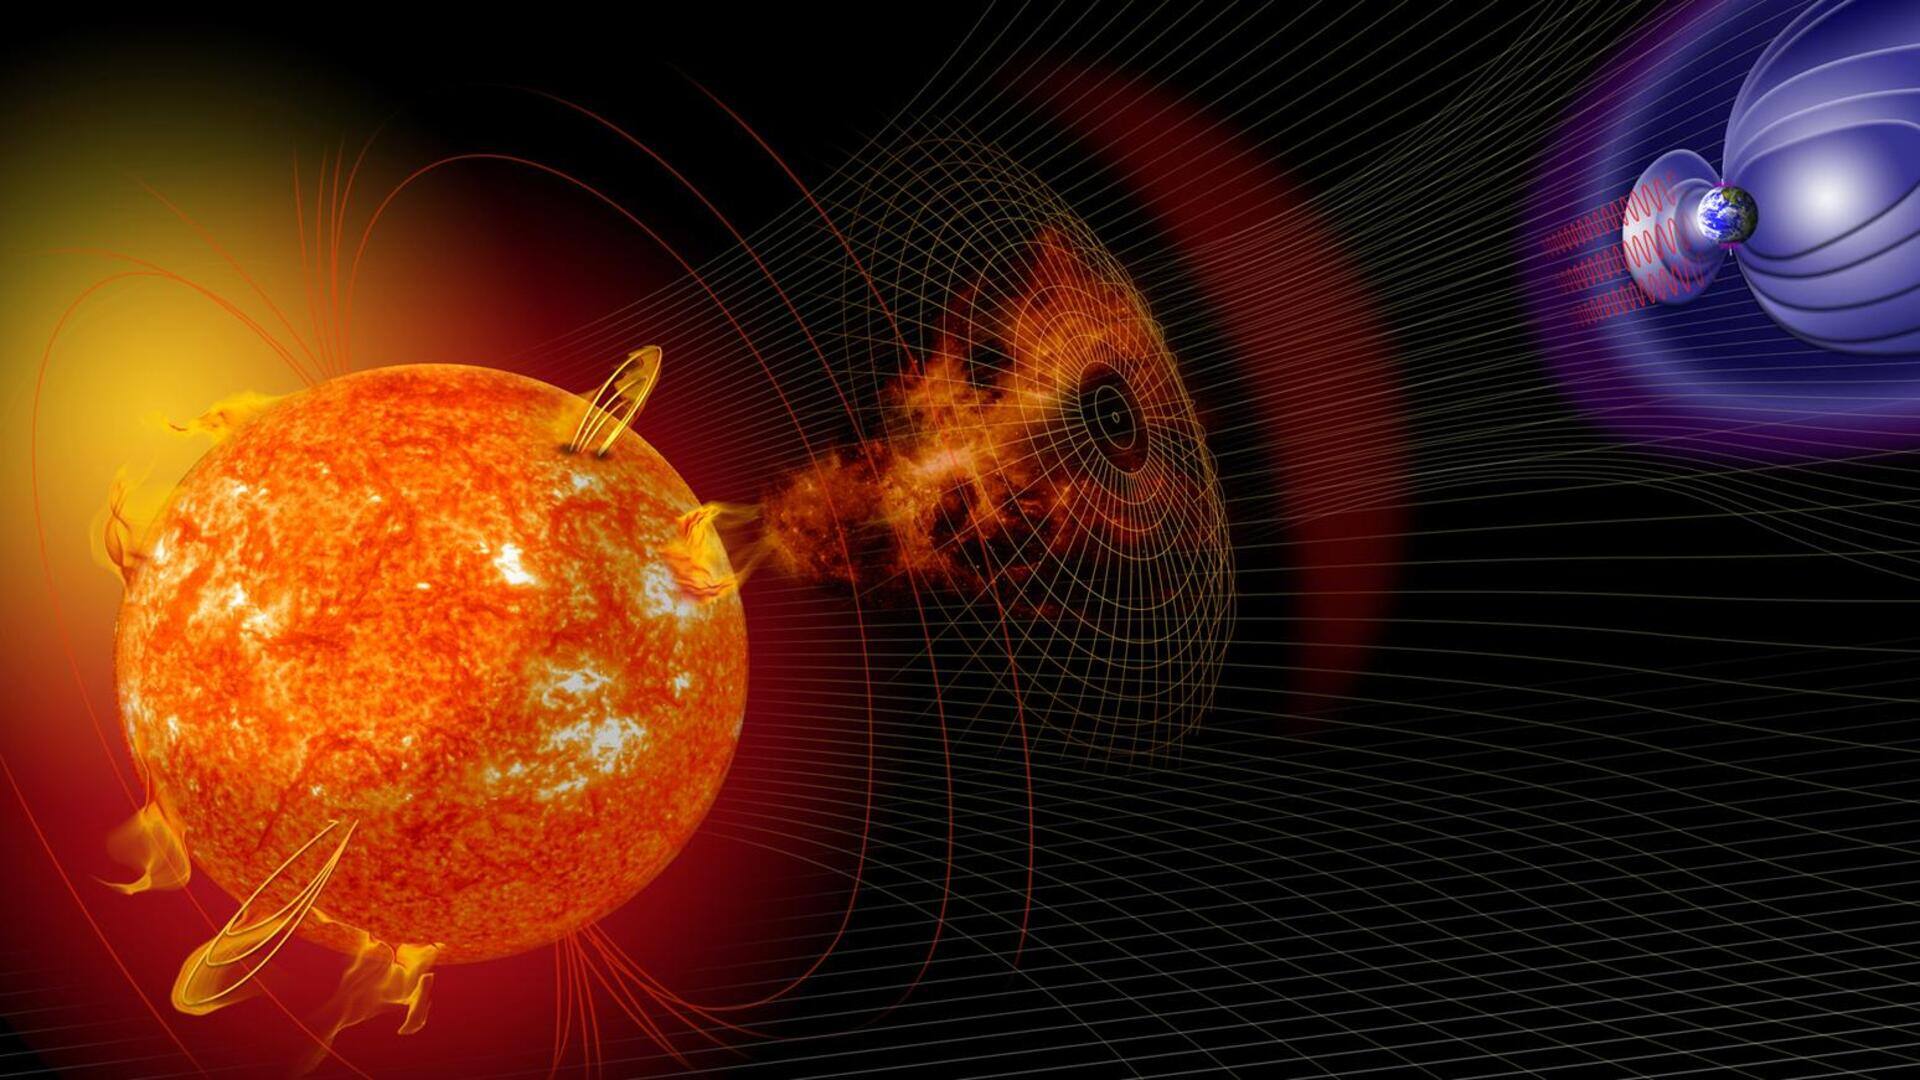 पृथ्वी की तरफ बढ़ रहा CME क्लाउड, अगले कुछ घंटों में आ सकता है सौर तूफान 